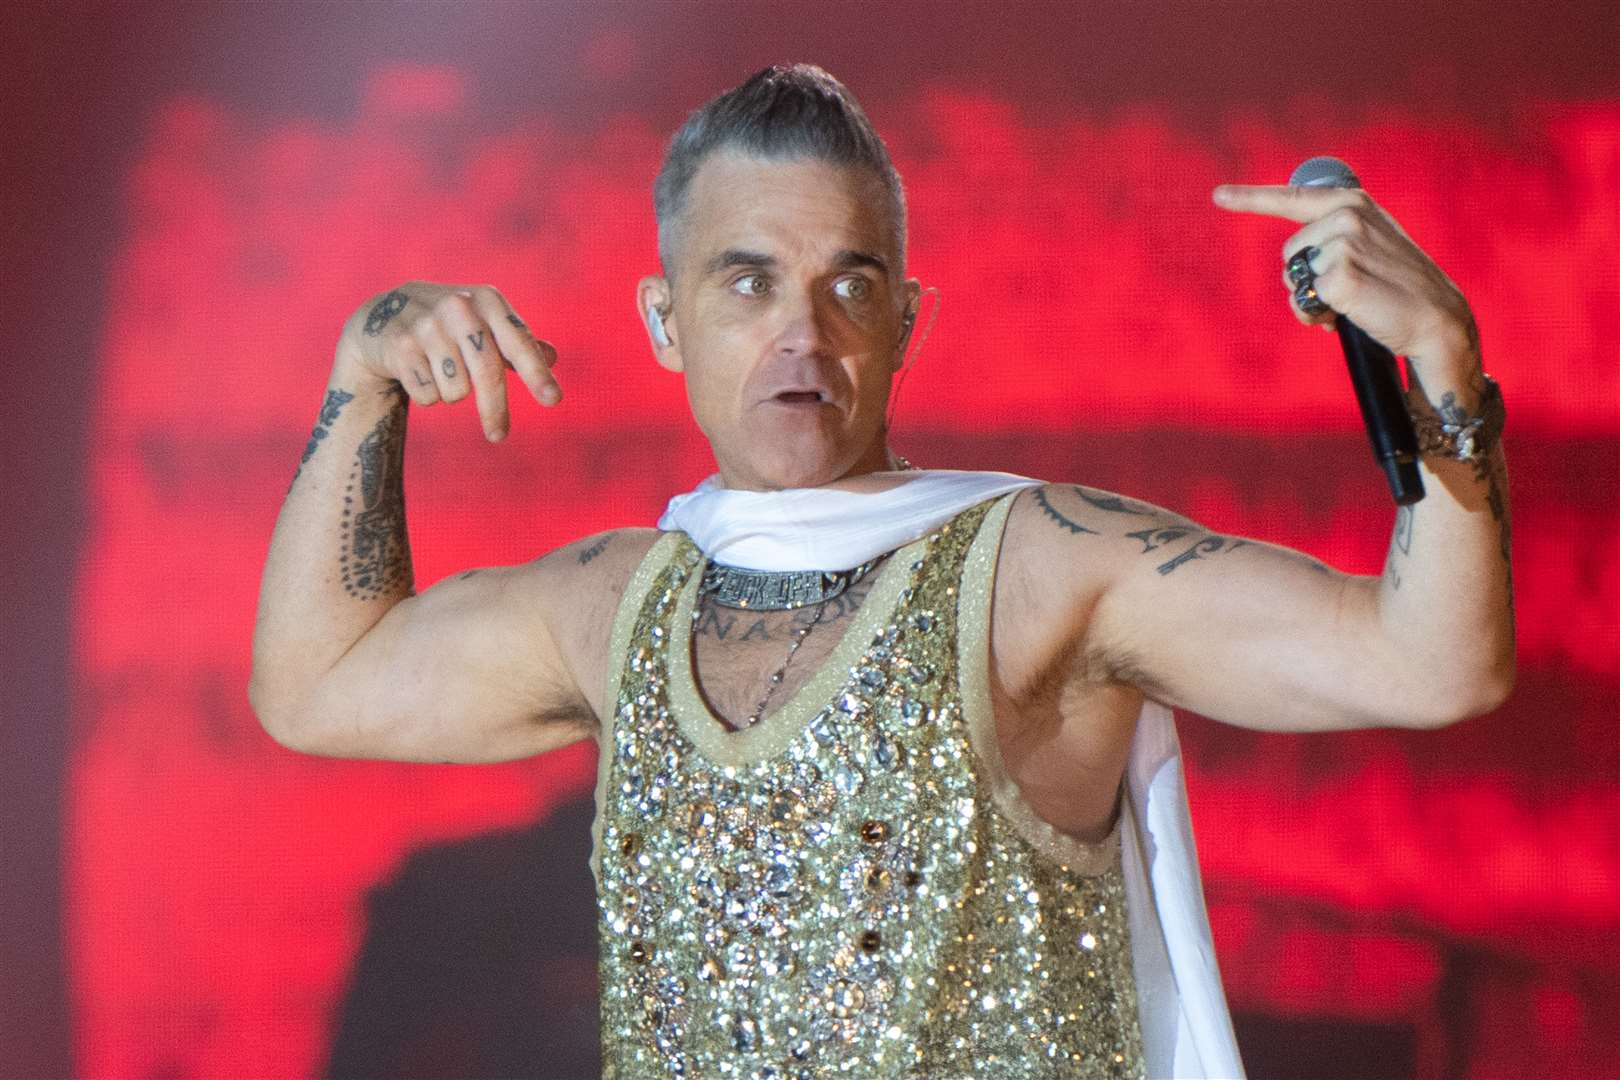 Singer Robbie Williams. (Joe Giddens/PA)